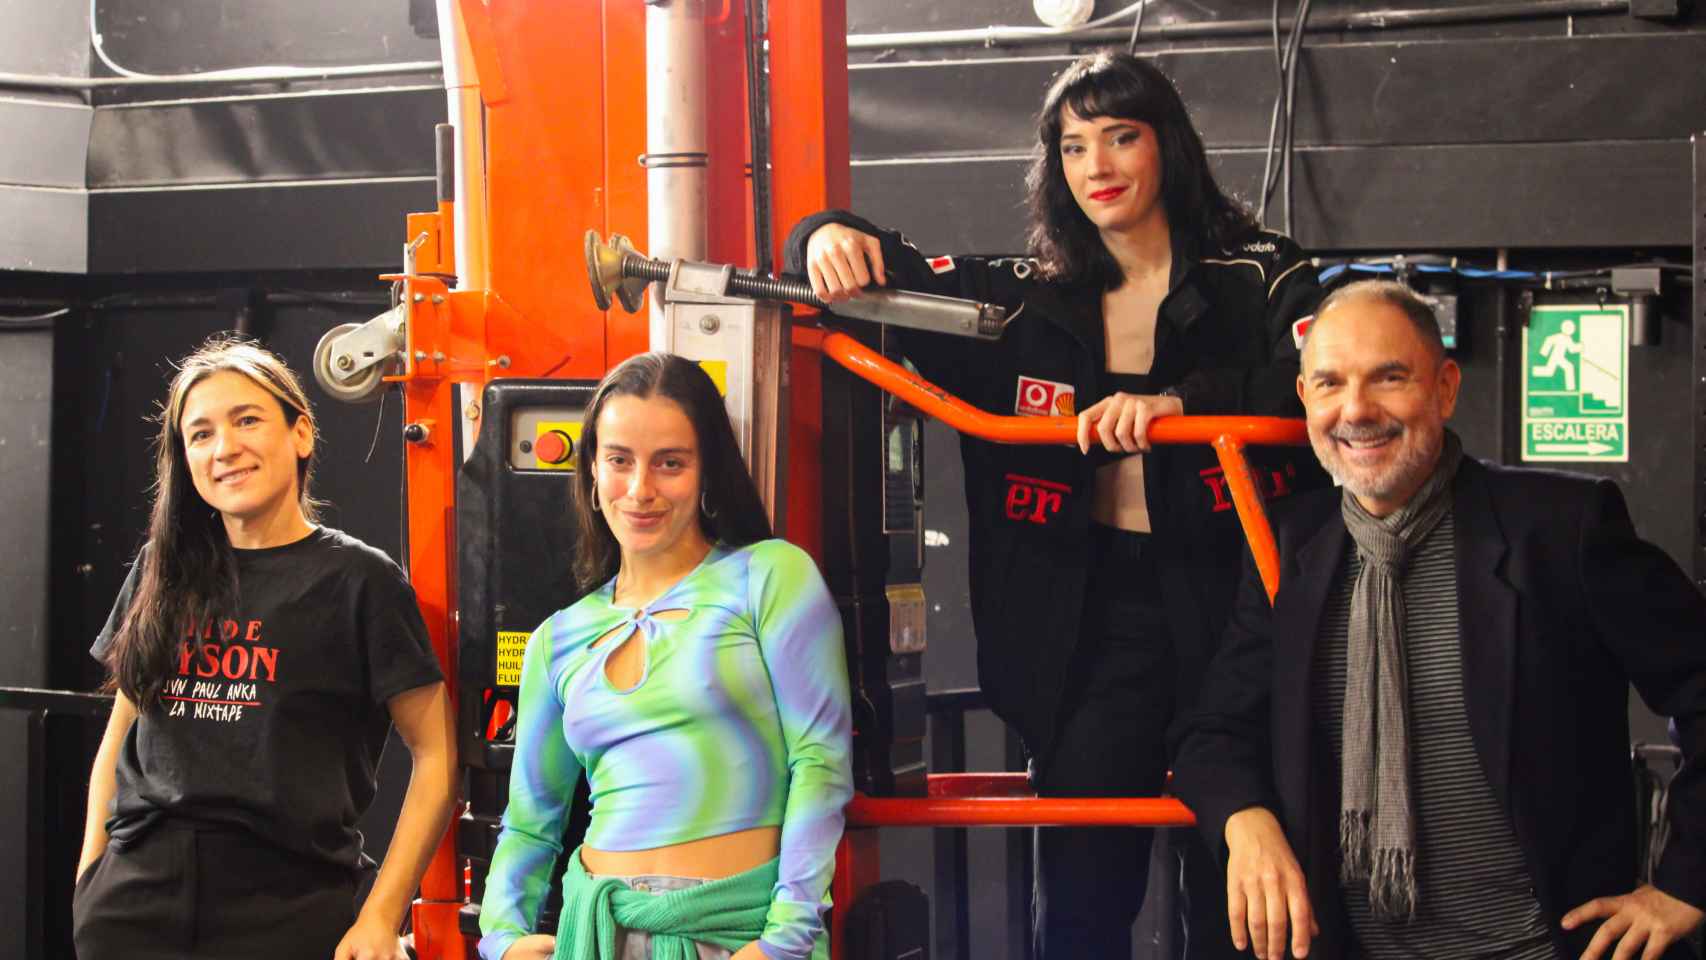 De izquierda a derecha: Alessandra García, Paloma Ramos, Muermo y Miguel Zurita. Junto a la máquina que llaman cariñosamente La Jenny.